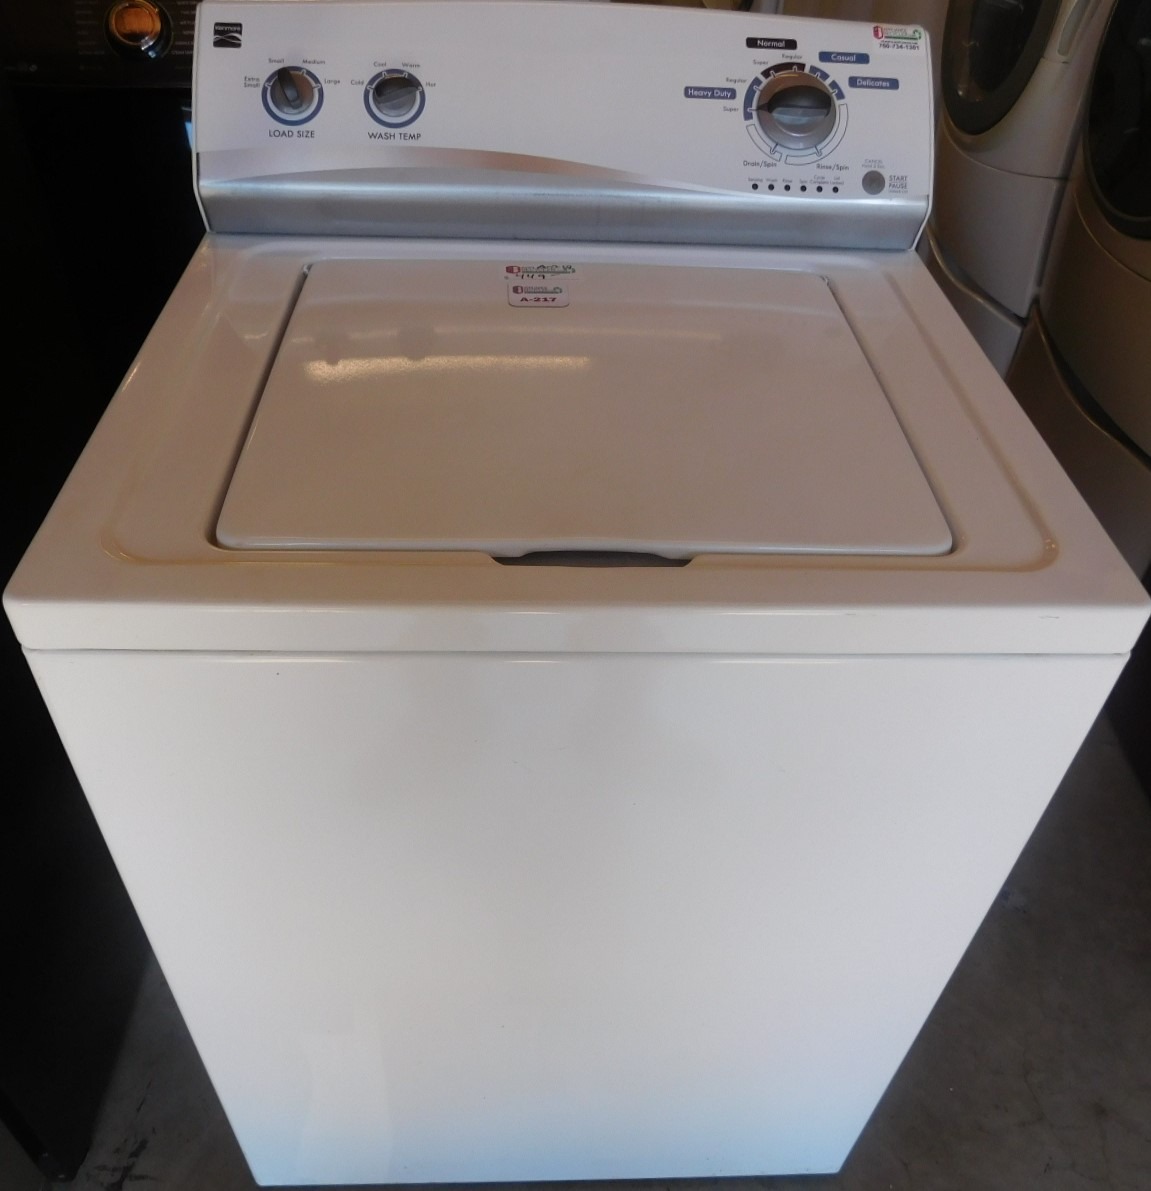 Kenmore washer heavy duty super capacity - Appliances - San Antonio, Texas, Facebook Marketplace